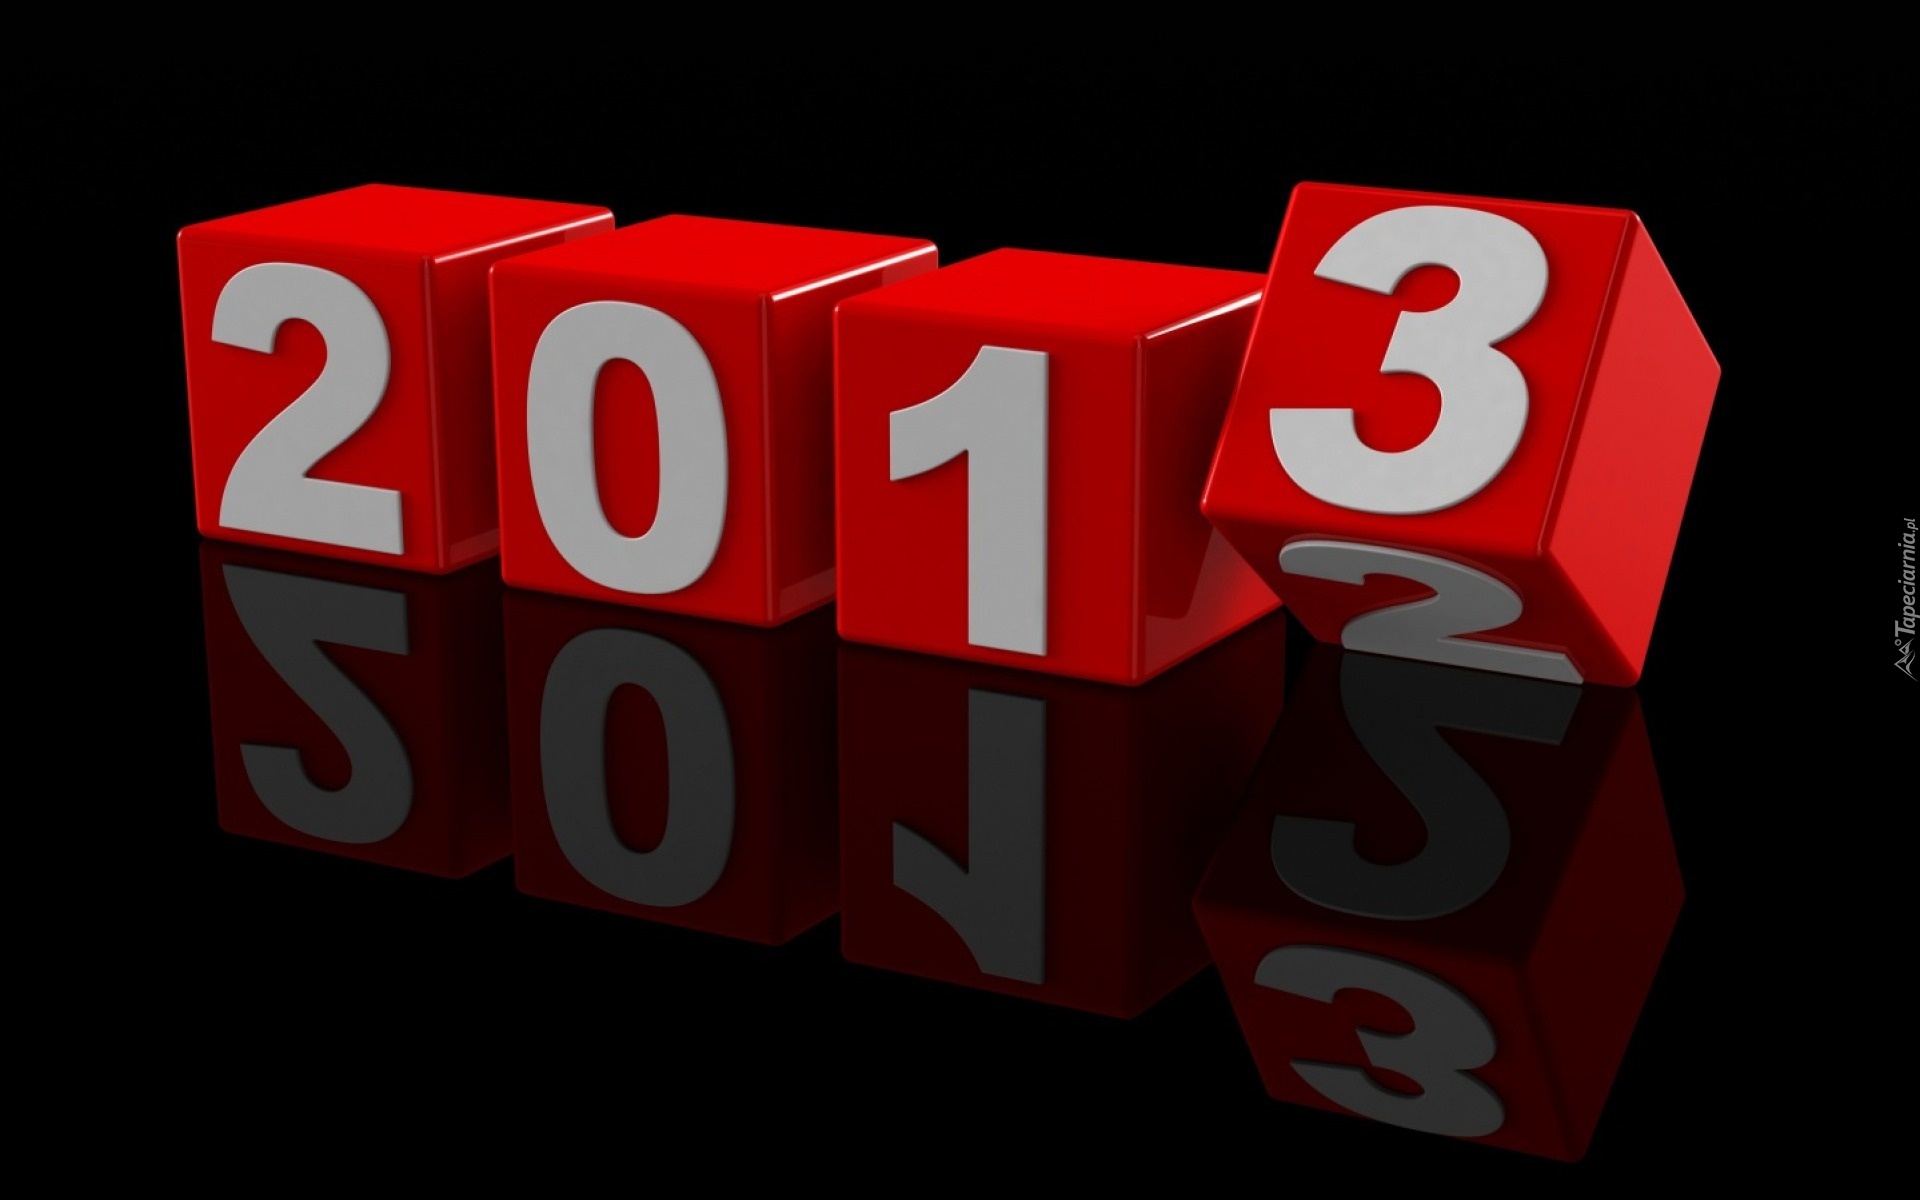 Nowy Rok, 2013, Klocki